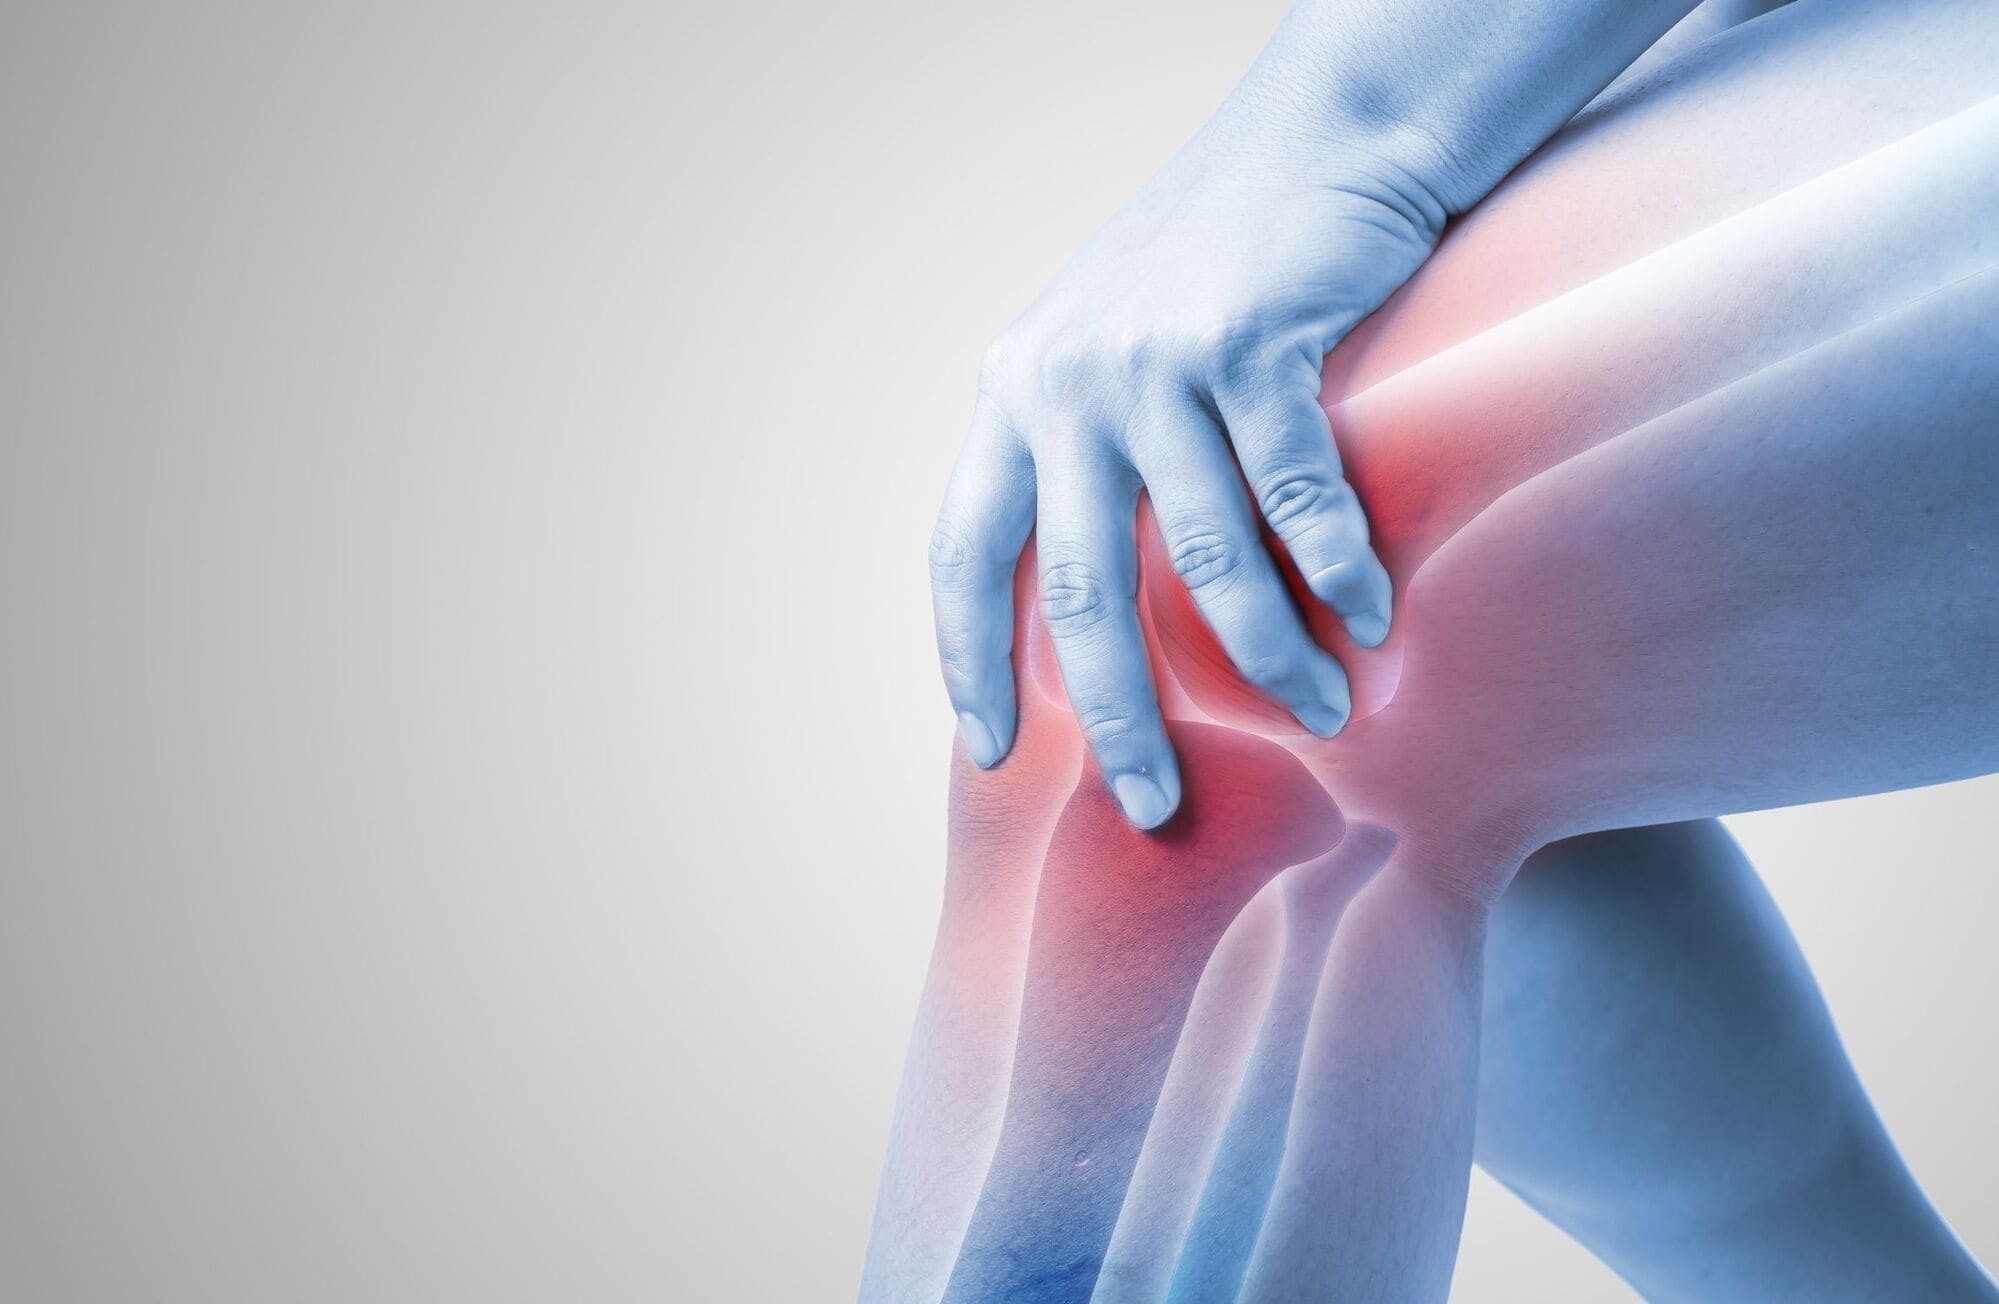  Fractura de Segond: Una lesión específica de la rodilla que no debe pasar desapercibida